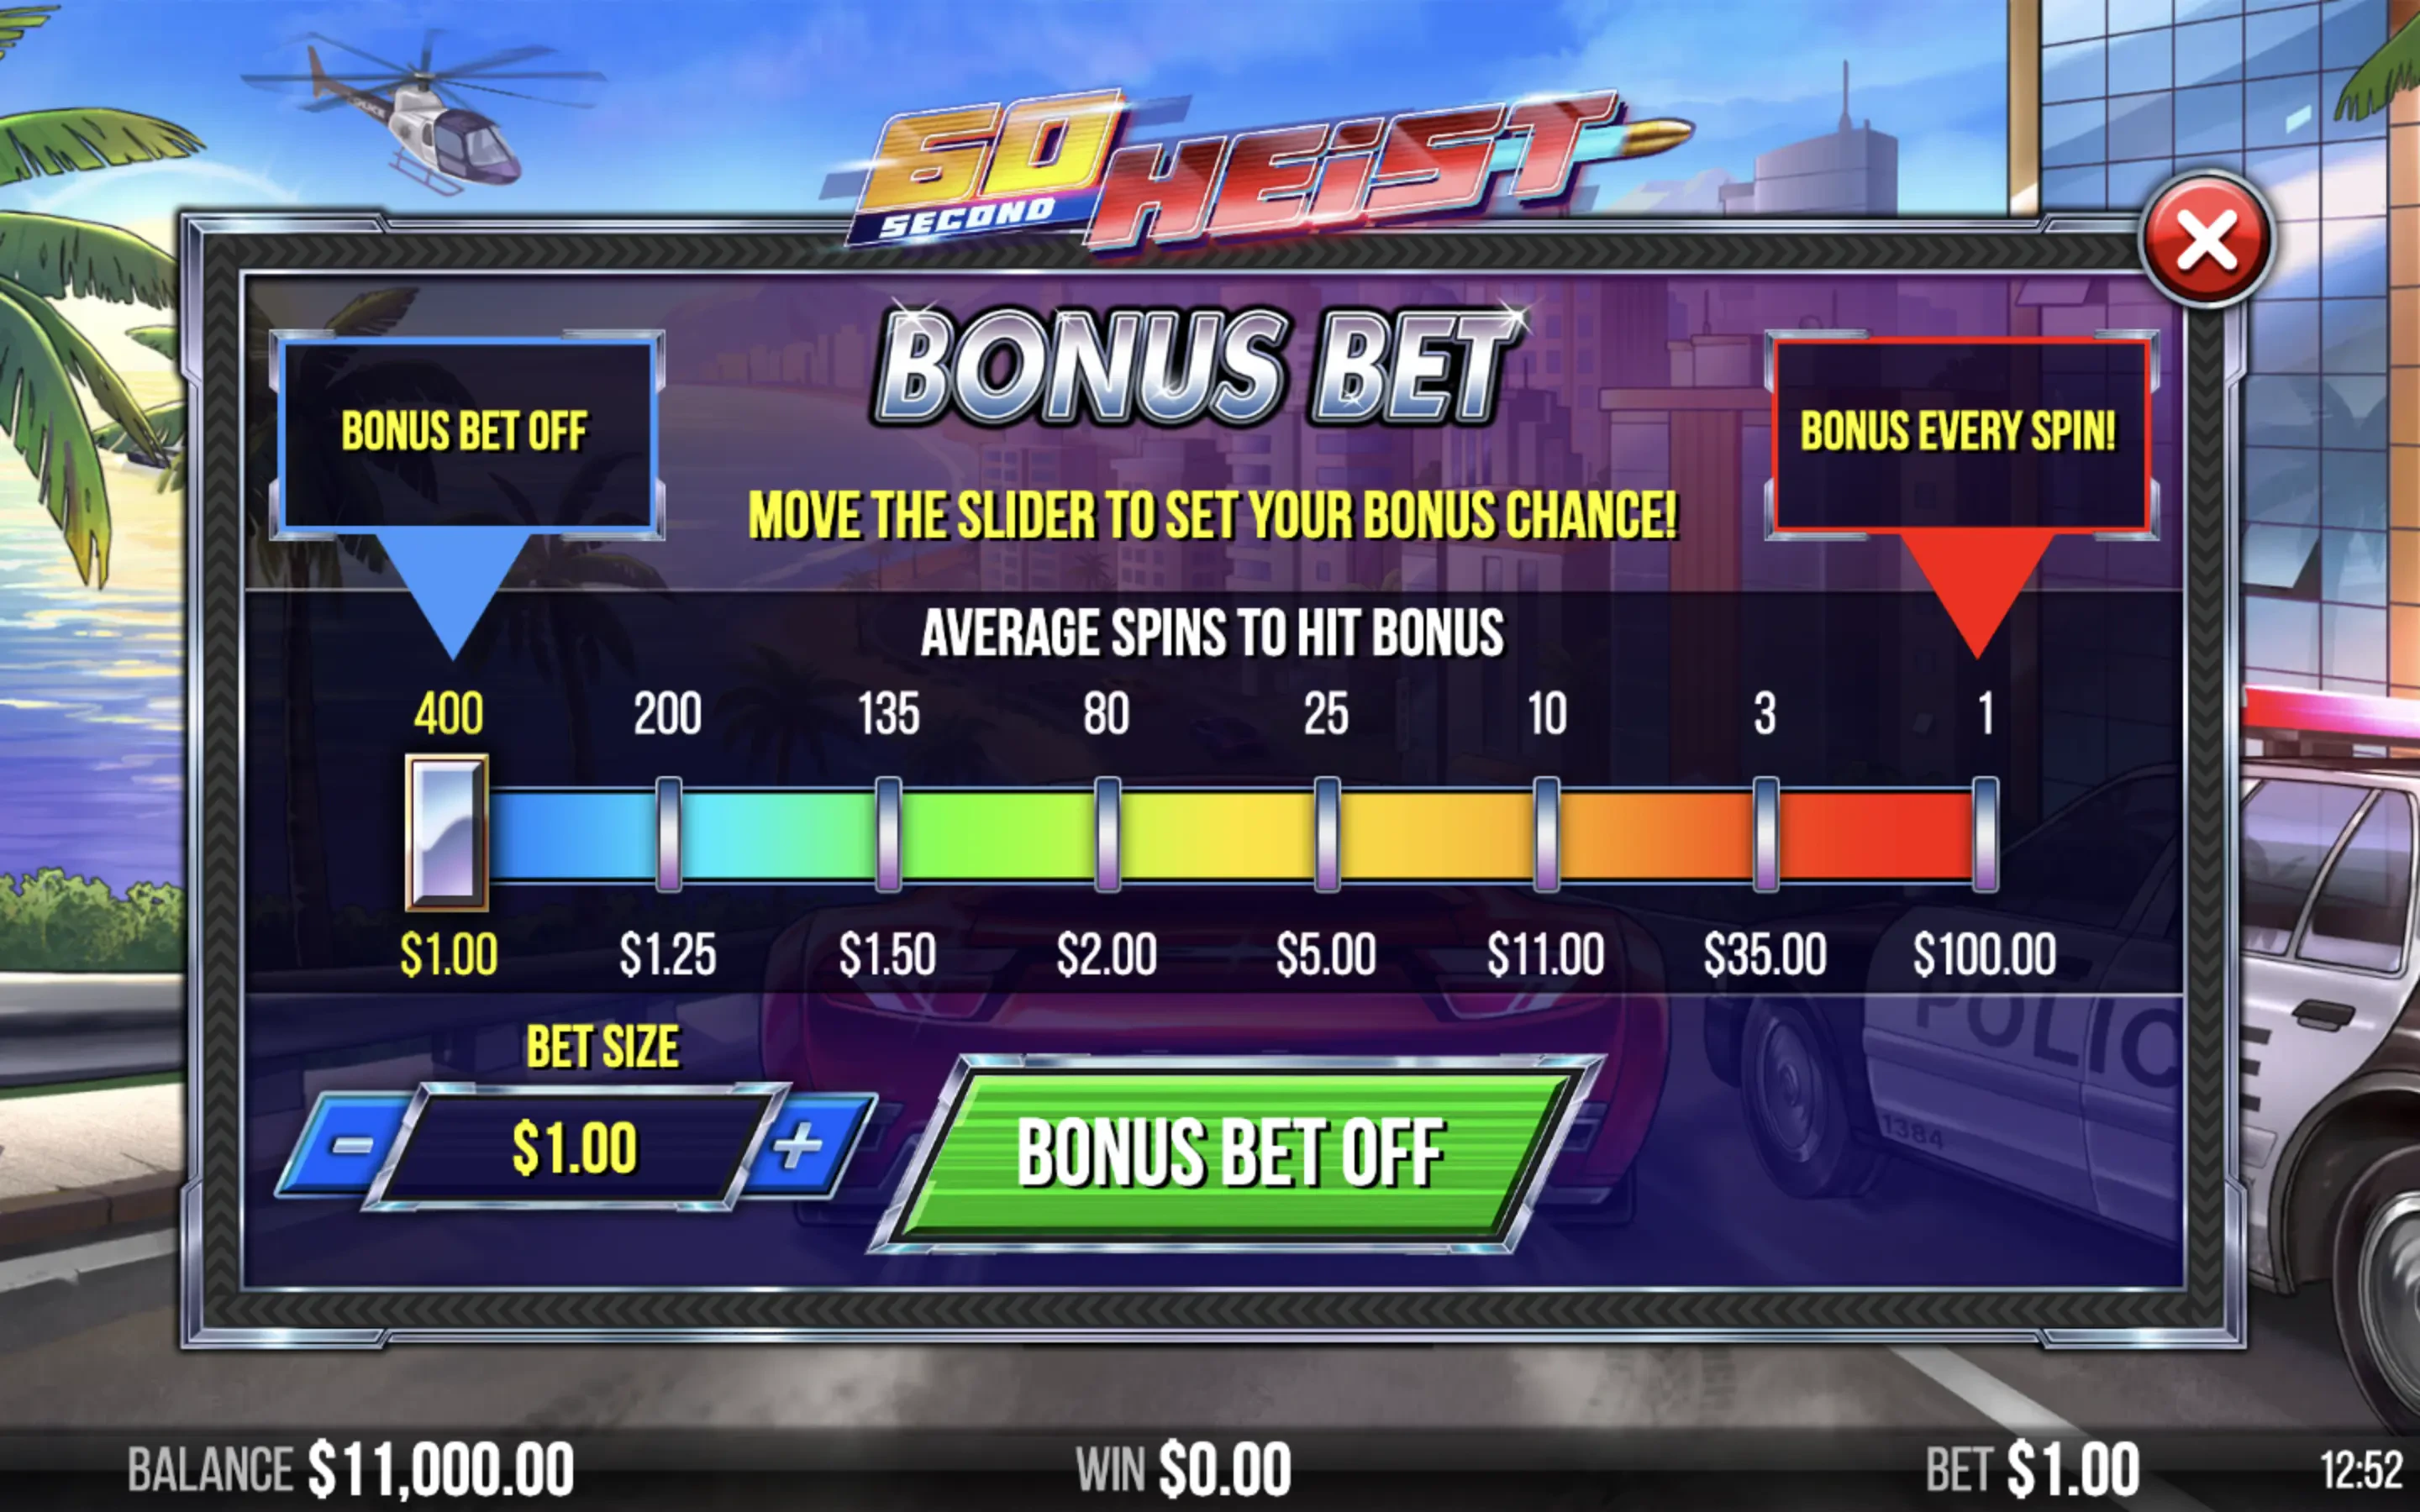 The bonus bet feature in 60 Seconds Heist